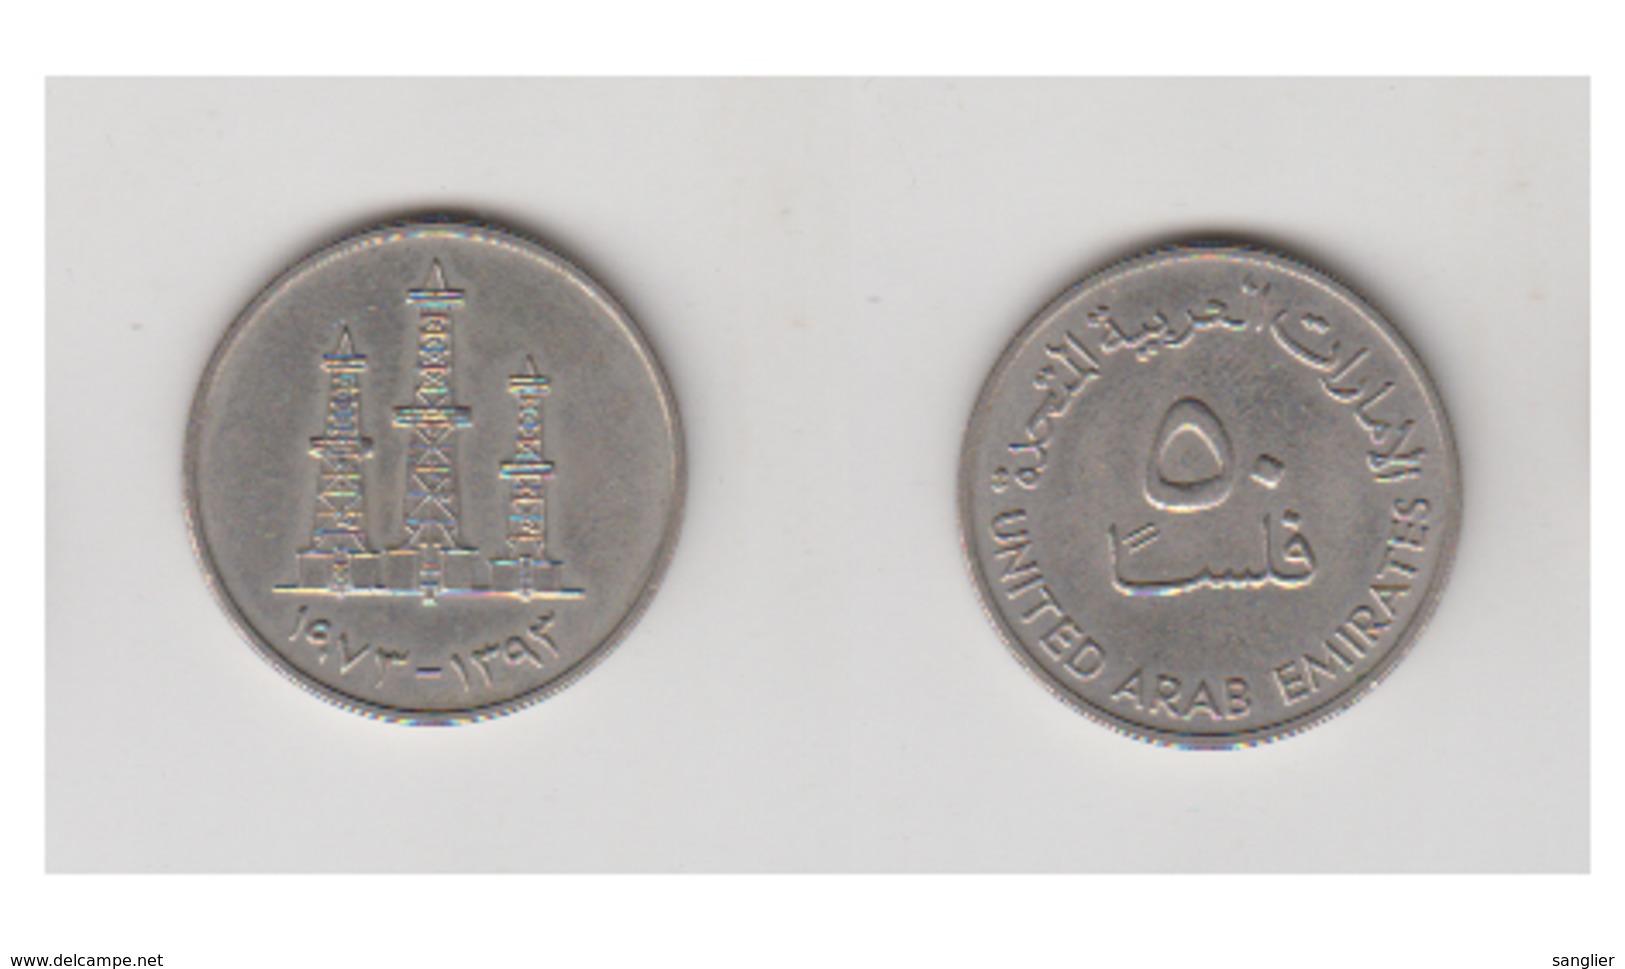 50 Fils 1973 (1393) UNITED ARAB EMIRATES - Emirats Arabes Unis